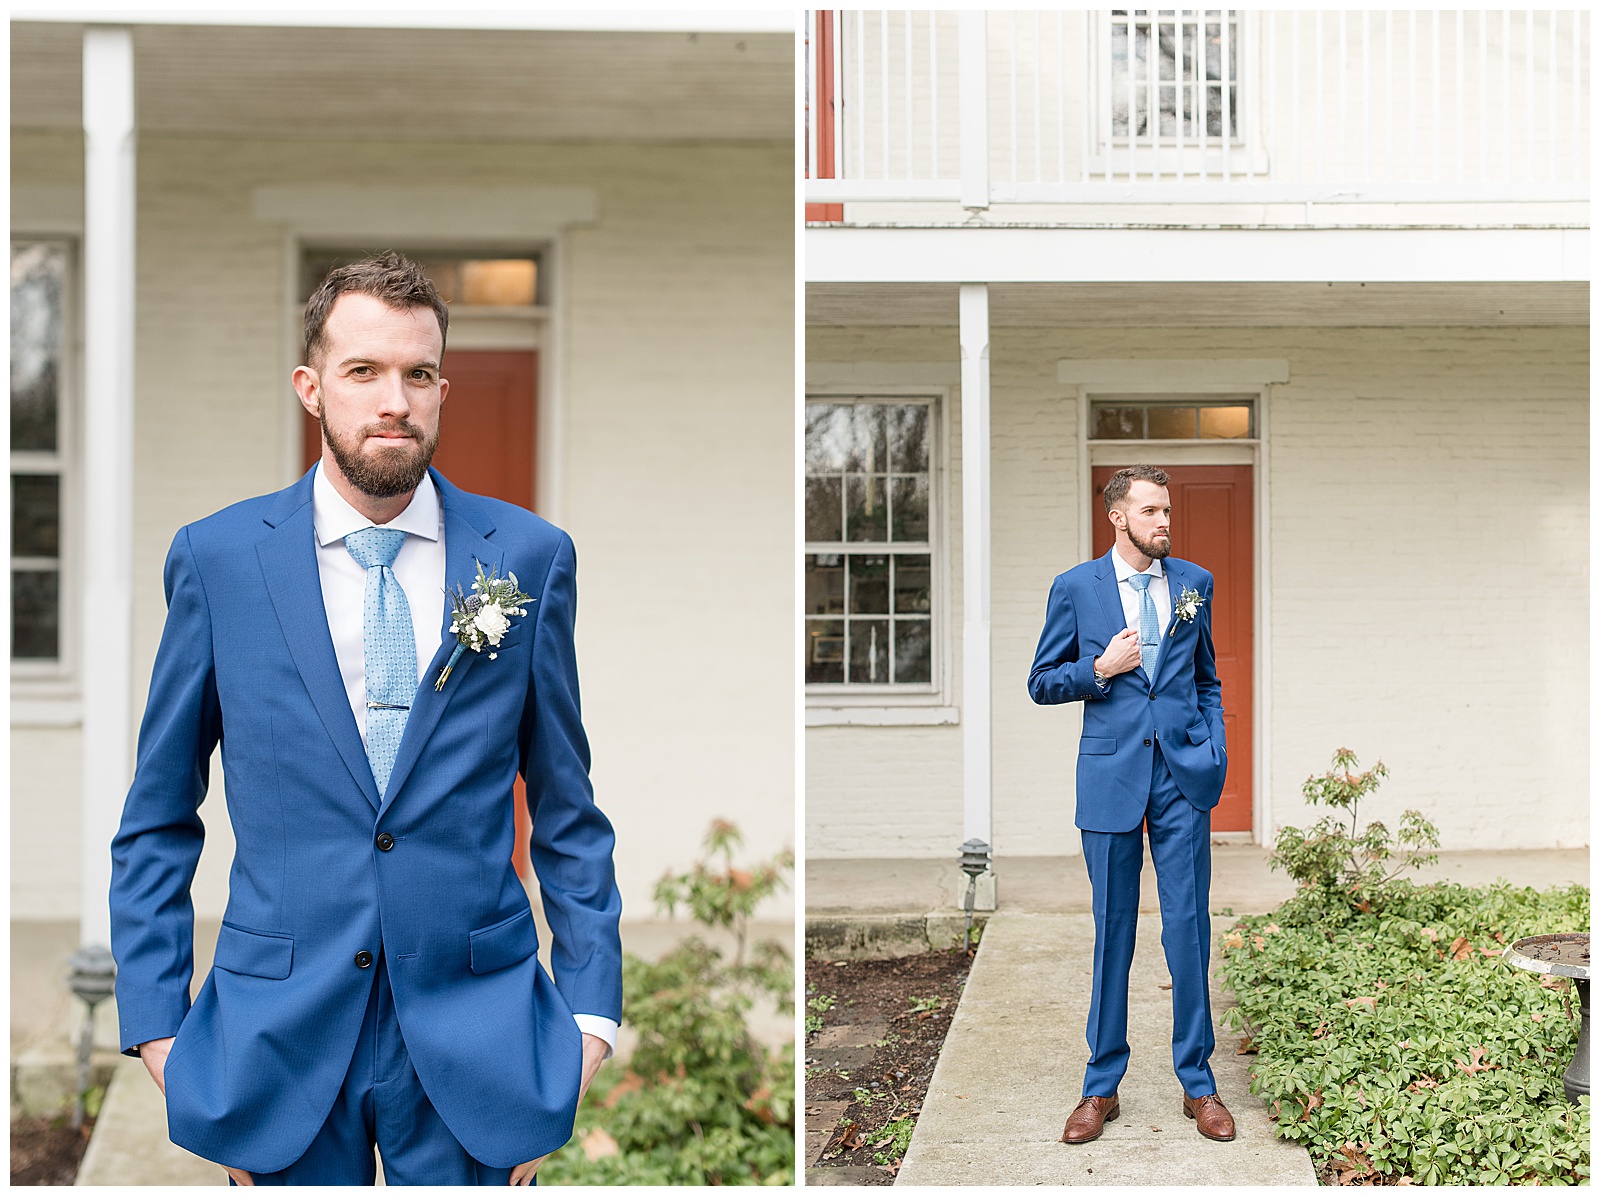 groom in dark blue suit with hands in pockets on walkway by red door